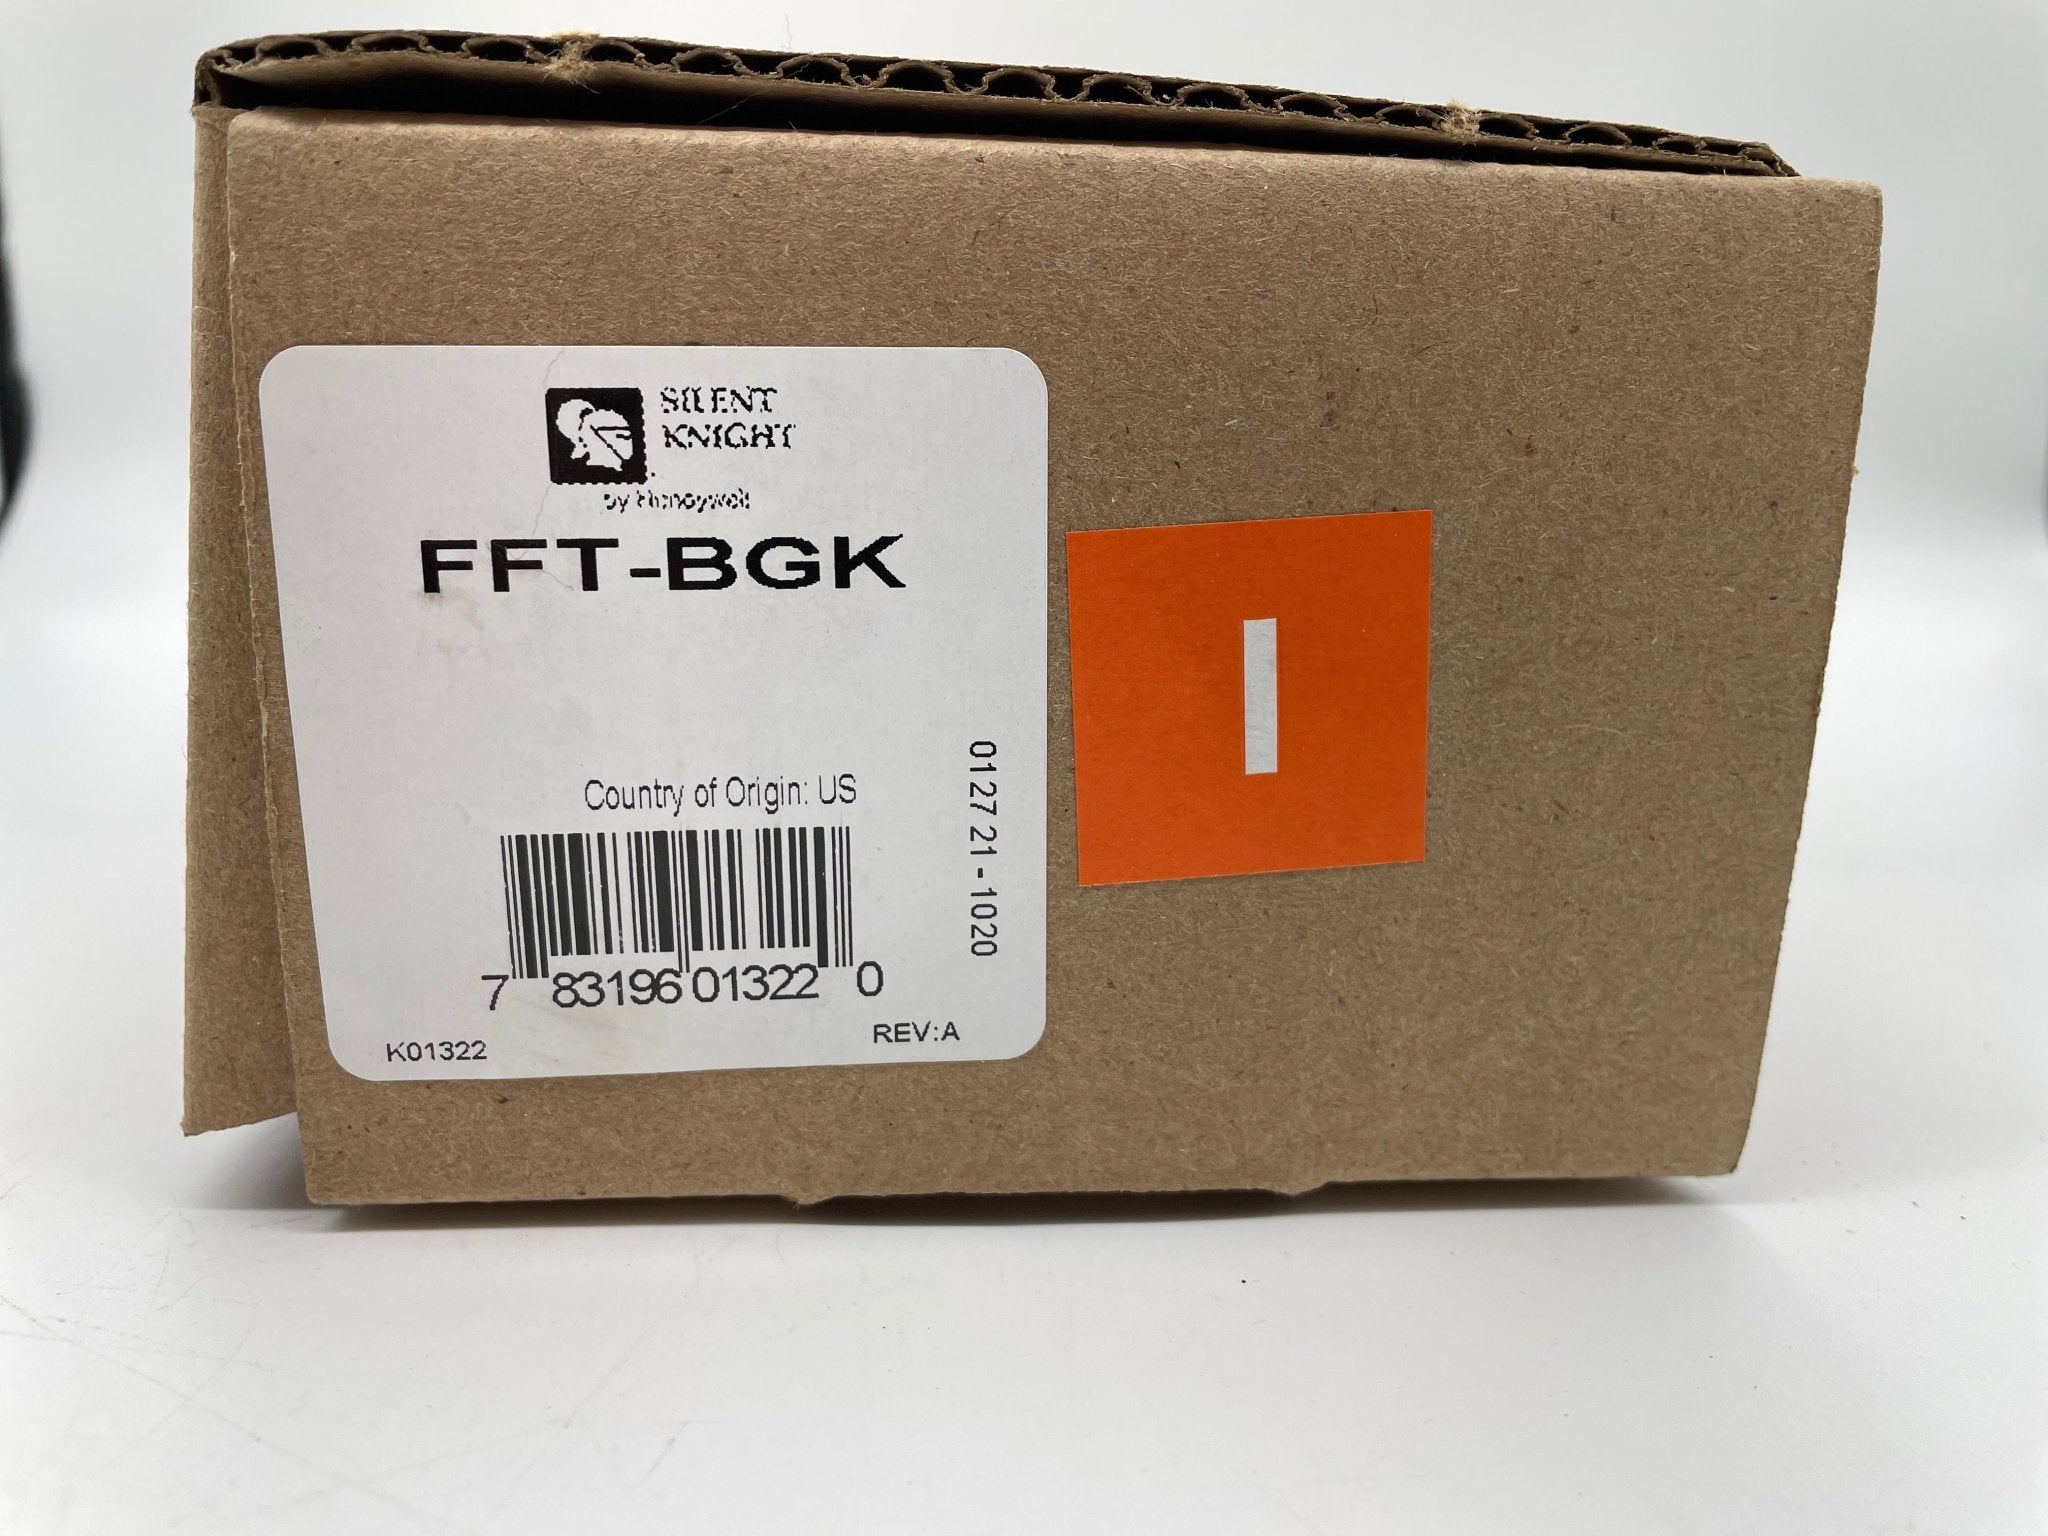 Silent Knight FFT-BGK - The Fire Alarm Supplier